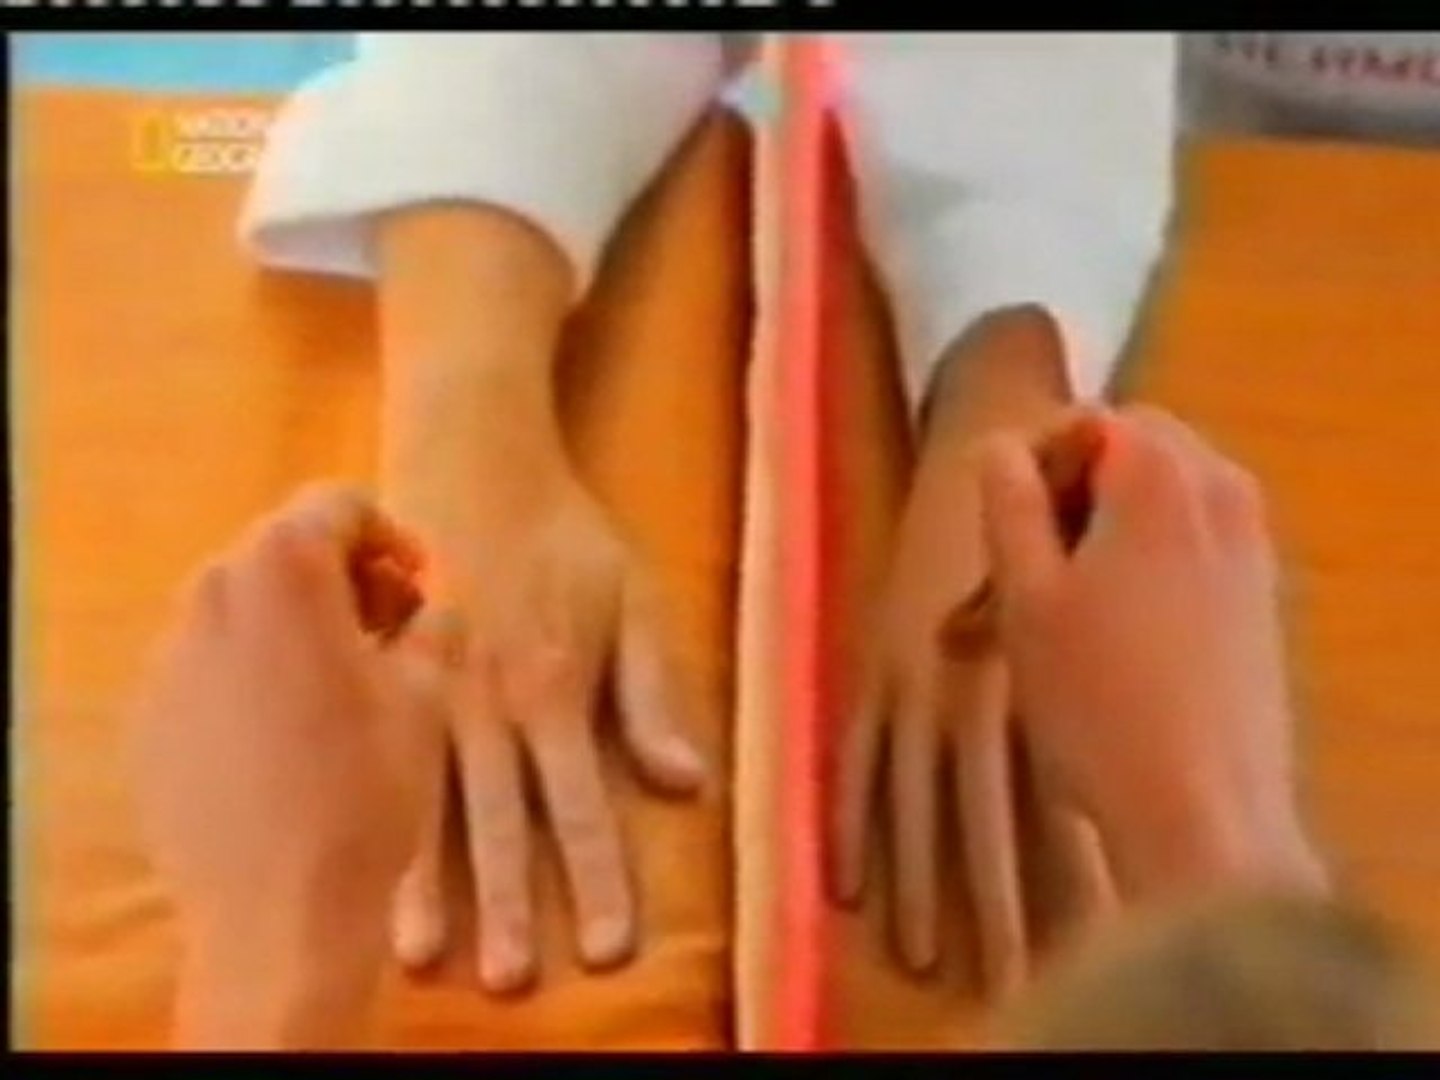 Cerebro: La ilusion de la mano de goma - Vídeo Dailymotion